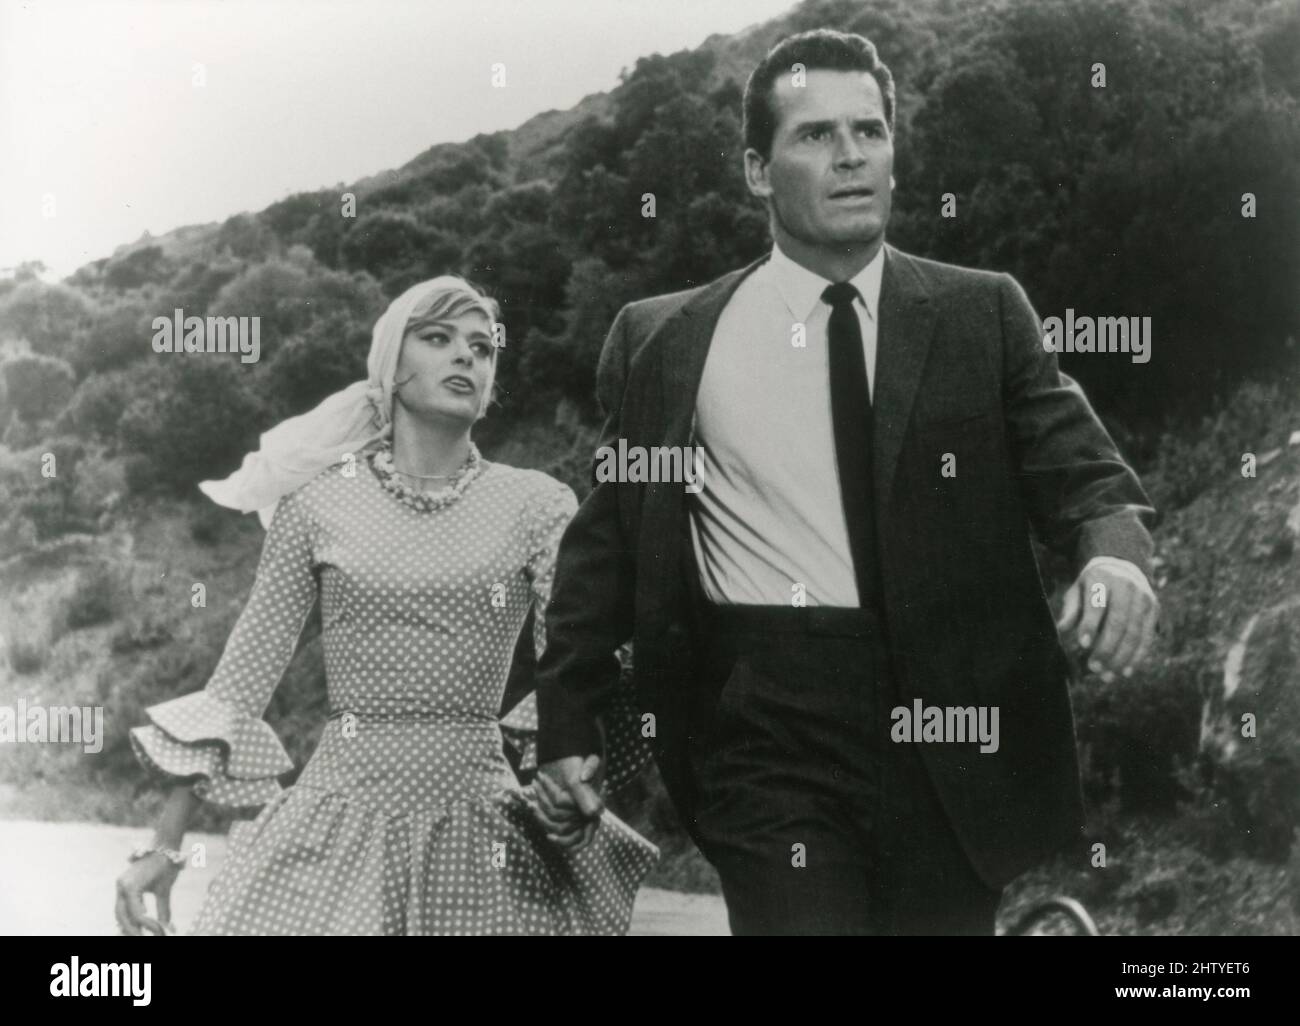 L'acteur américain James Garner et l'actrice et politicien grec Melina Mercouri dans le film Un homme pourrait être tué, USA 1966 Banque D'Images